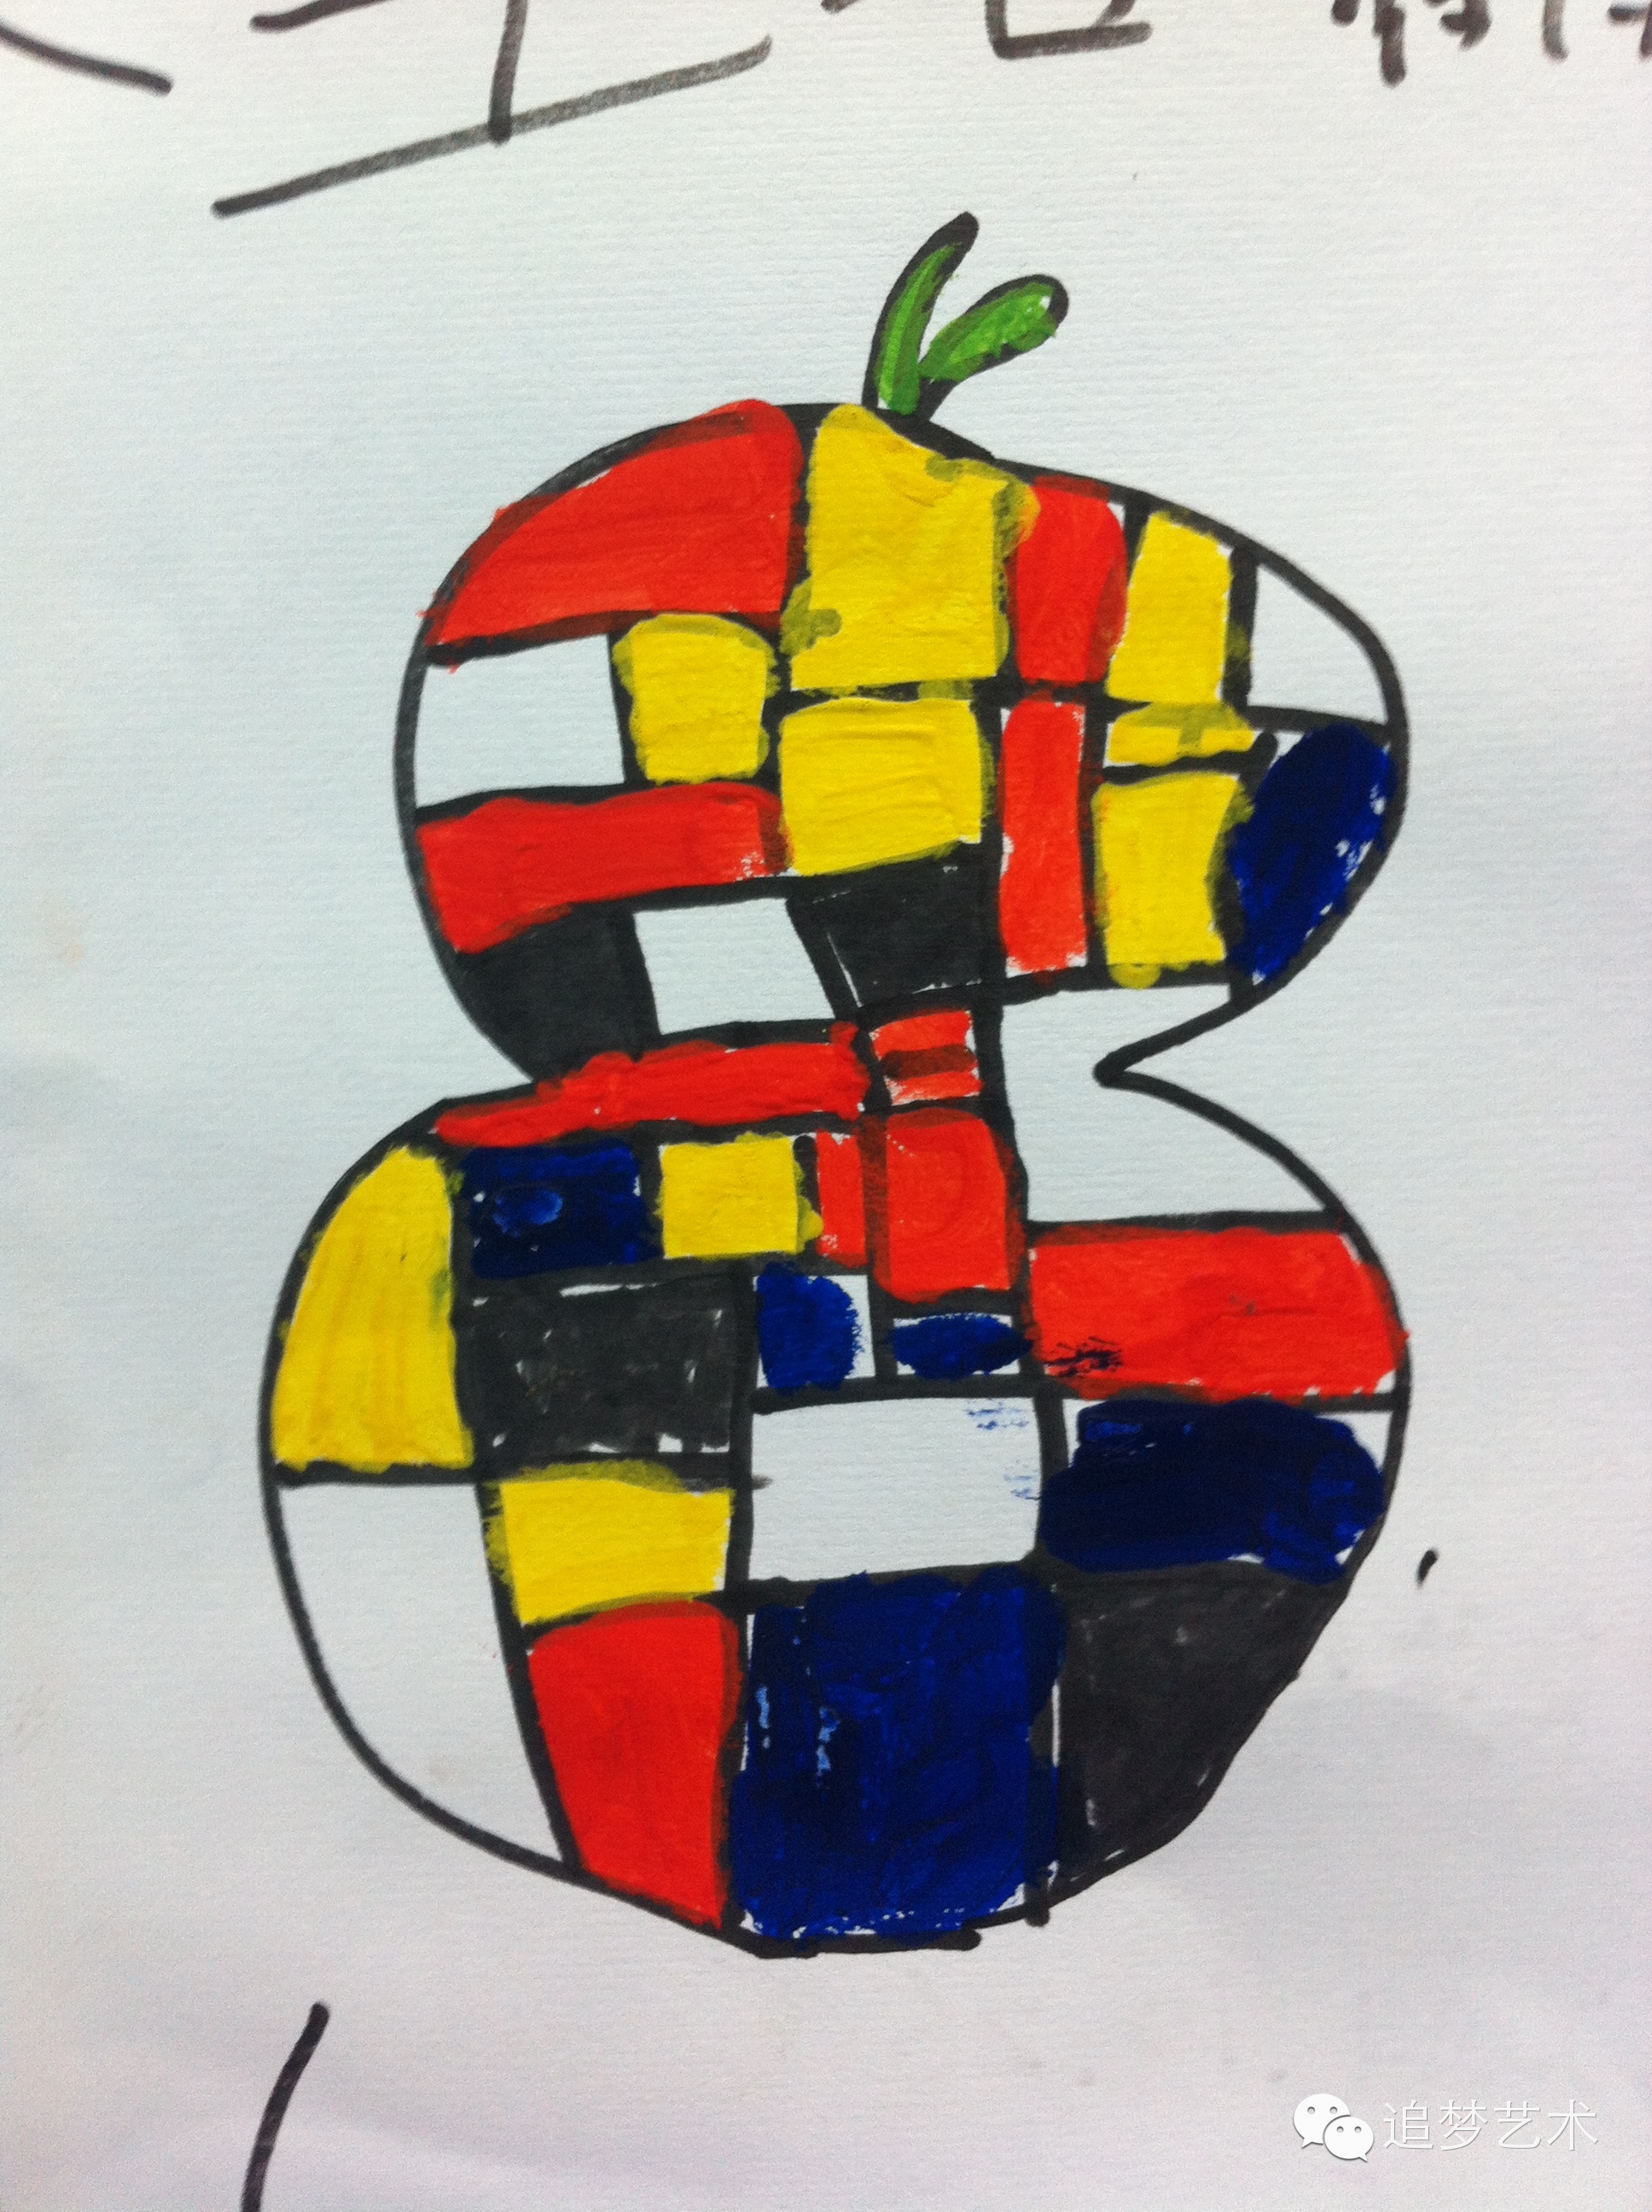 以水果造型为外轮廓,模仿蒙德里安用三原色的构成画一副画,感受红黄蓝